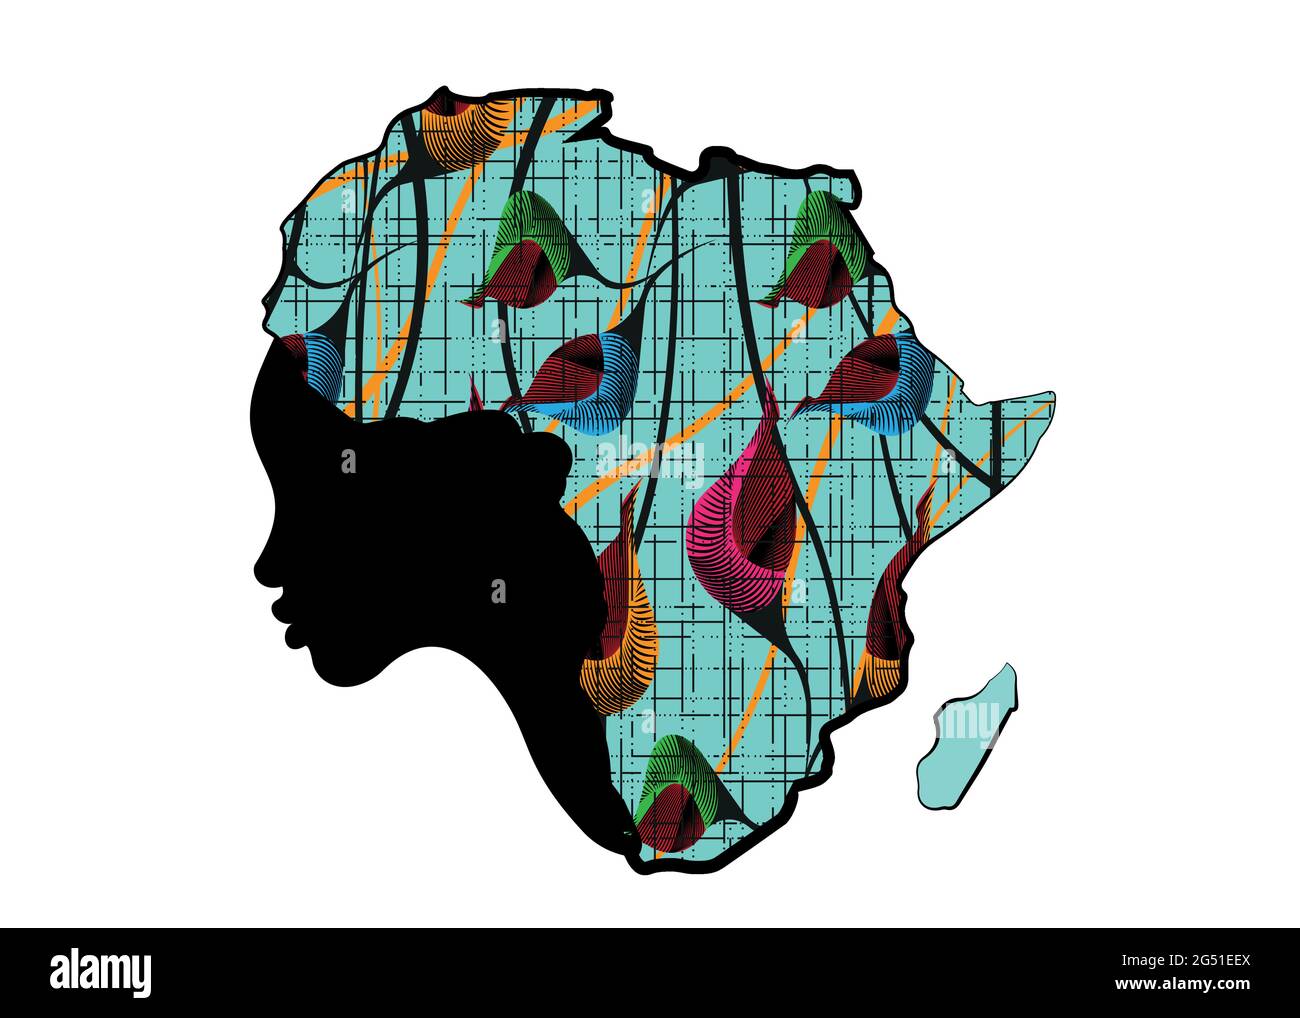 Konzept der afrikanischen Frau, Gesicht Profil Silhouette mit Turban in Form einer Karte von Afrika. Farbenfroher Afro-Print-Stoff, Design-Vorlage mit Tribal-Logo Stock Vektor